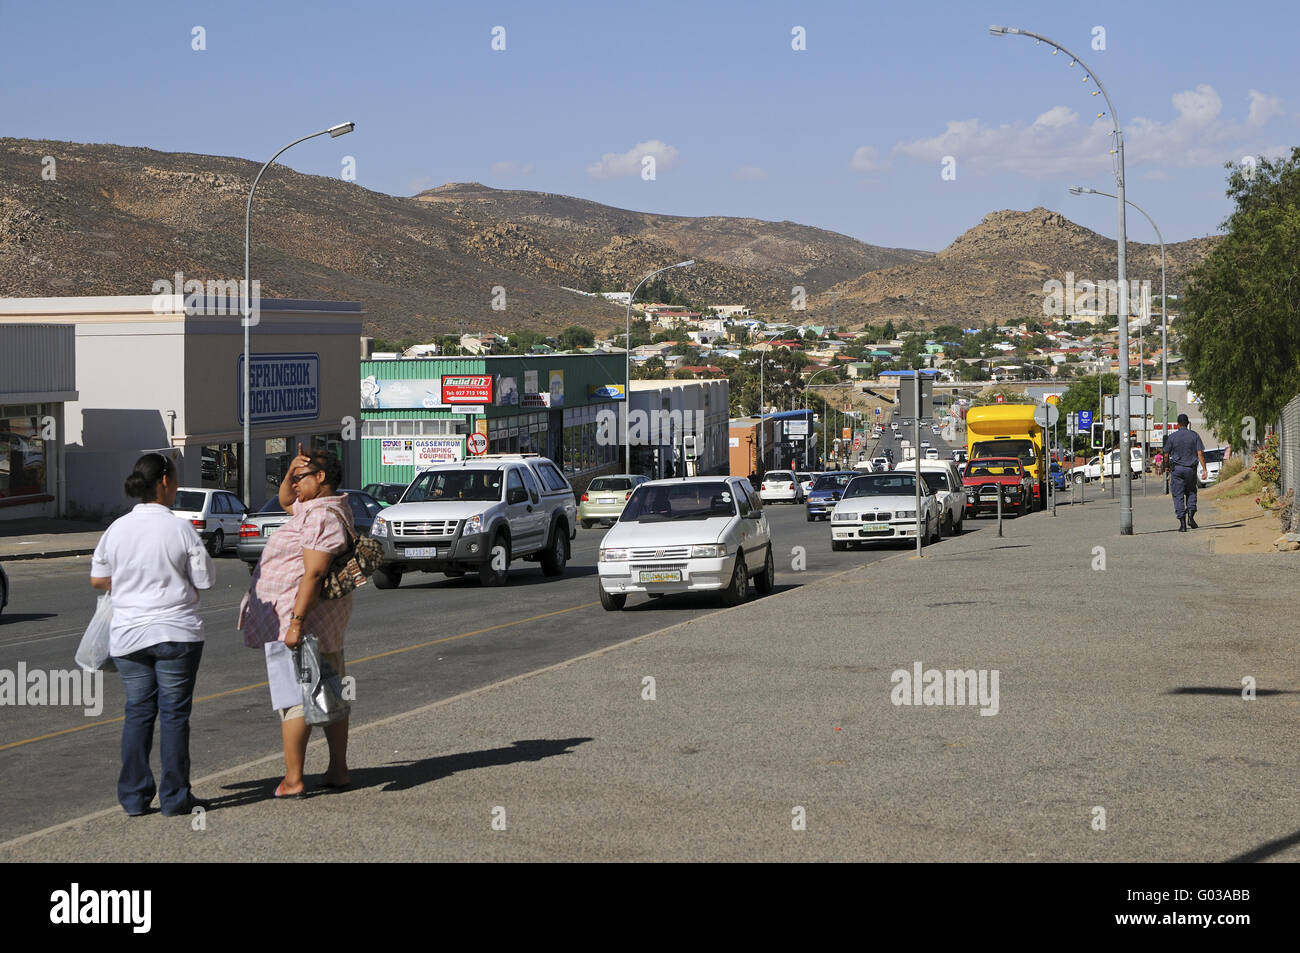 Street scene in Springbok,Namaqualand,South Africa Stock Photo